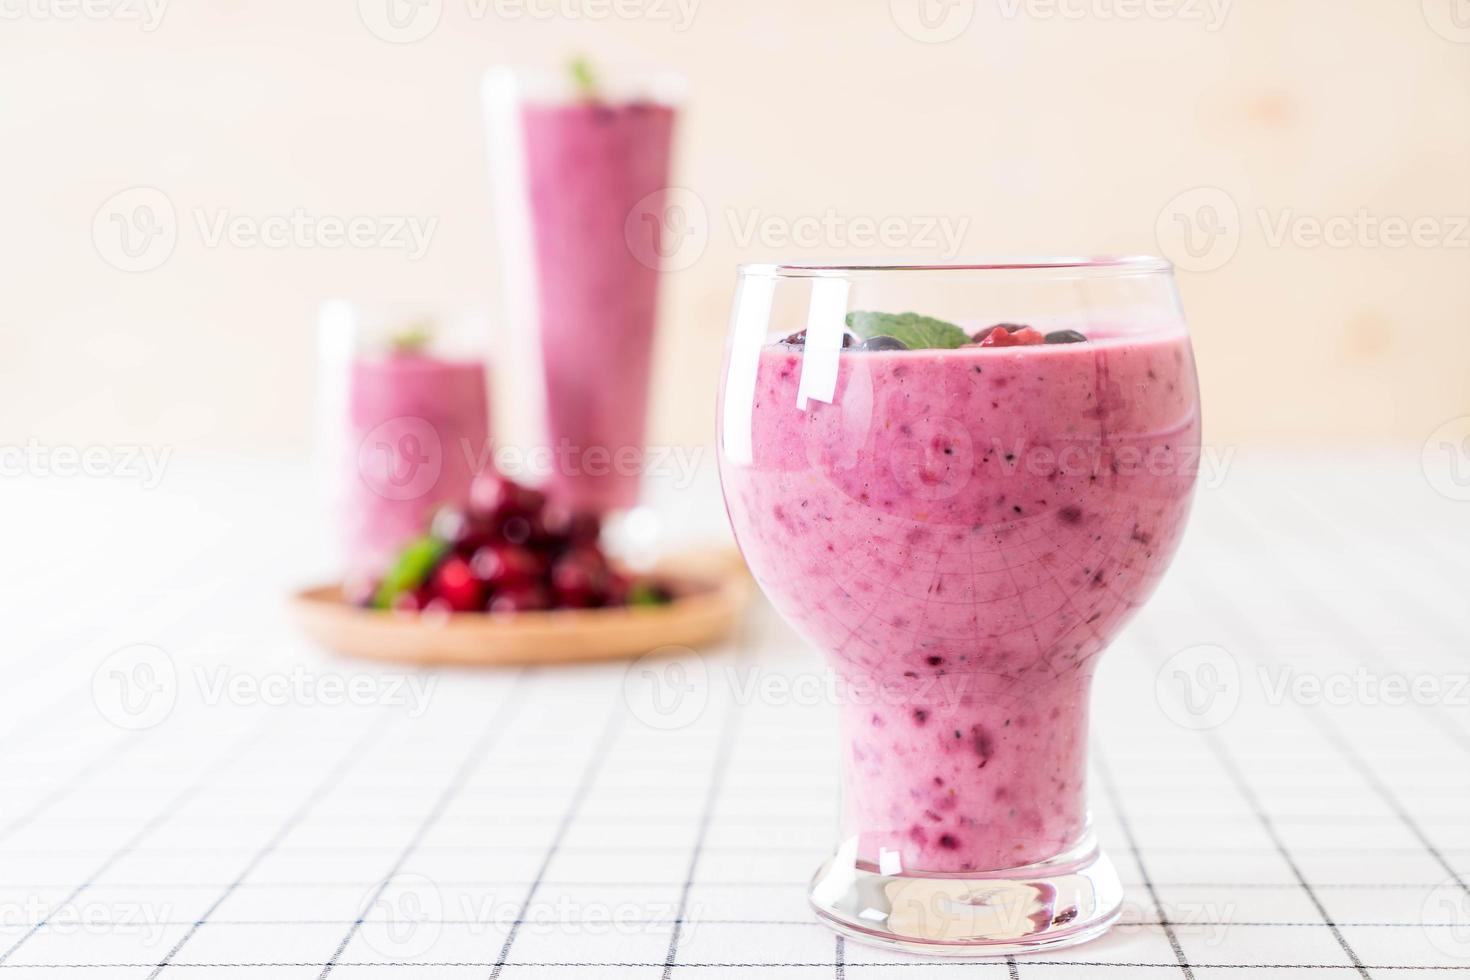 gemischte Beeren mit Joghurt-Smoothies auf dem Tisch foto